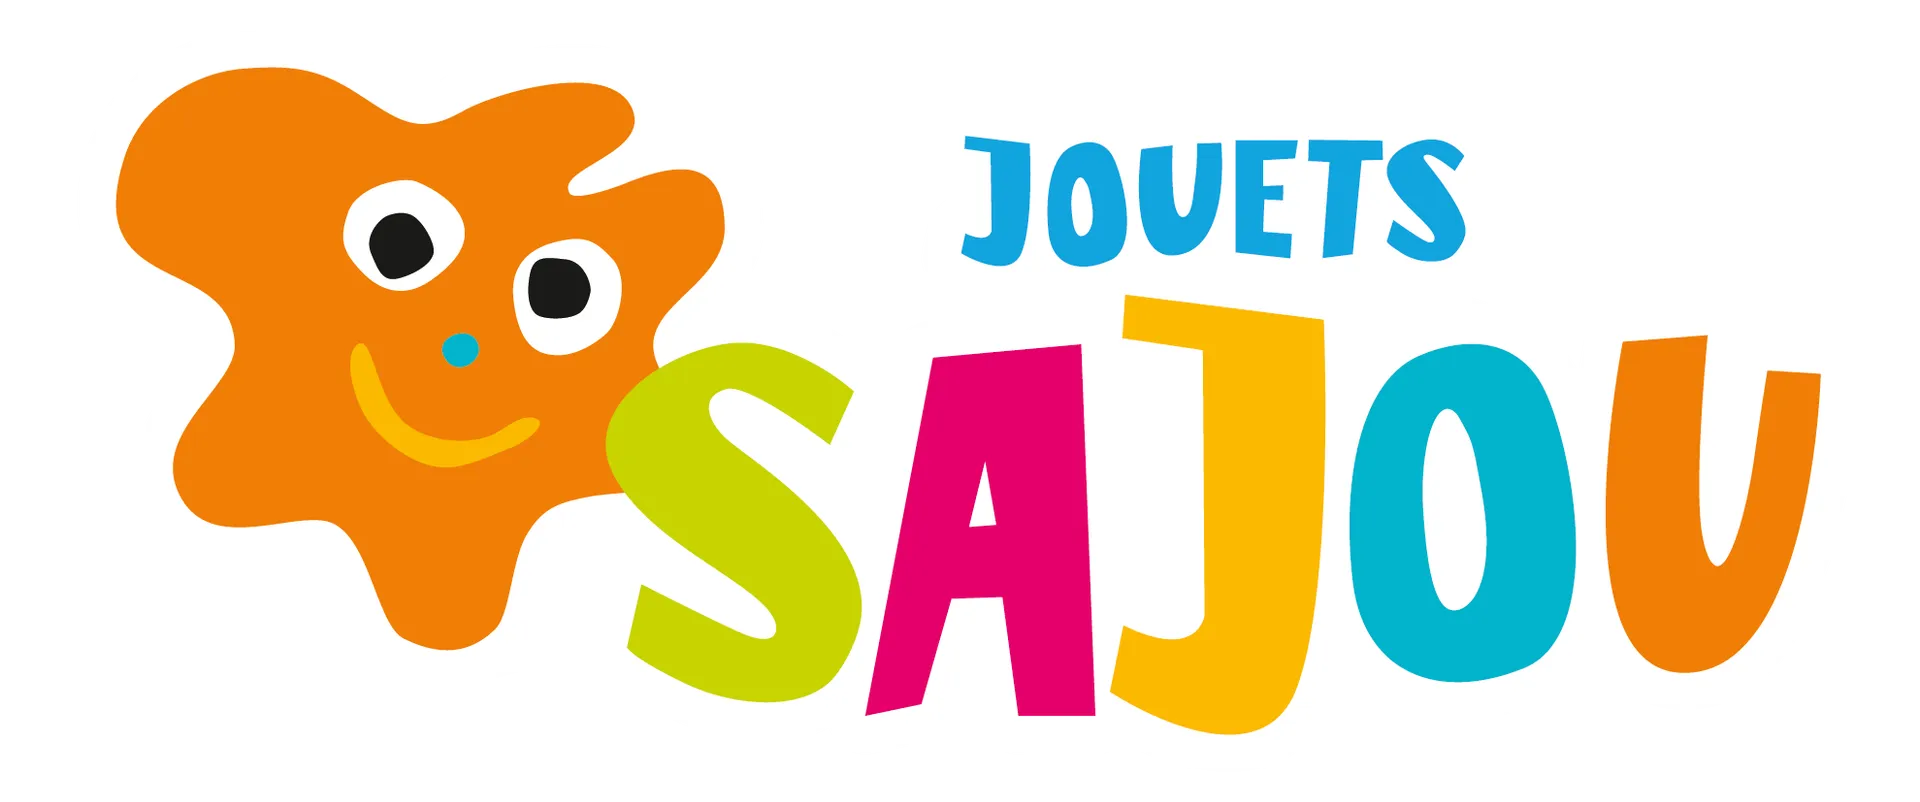 JOUETS SAJOU logo